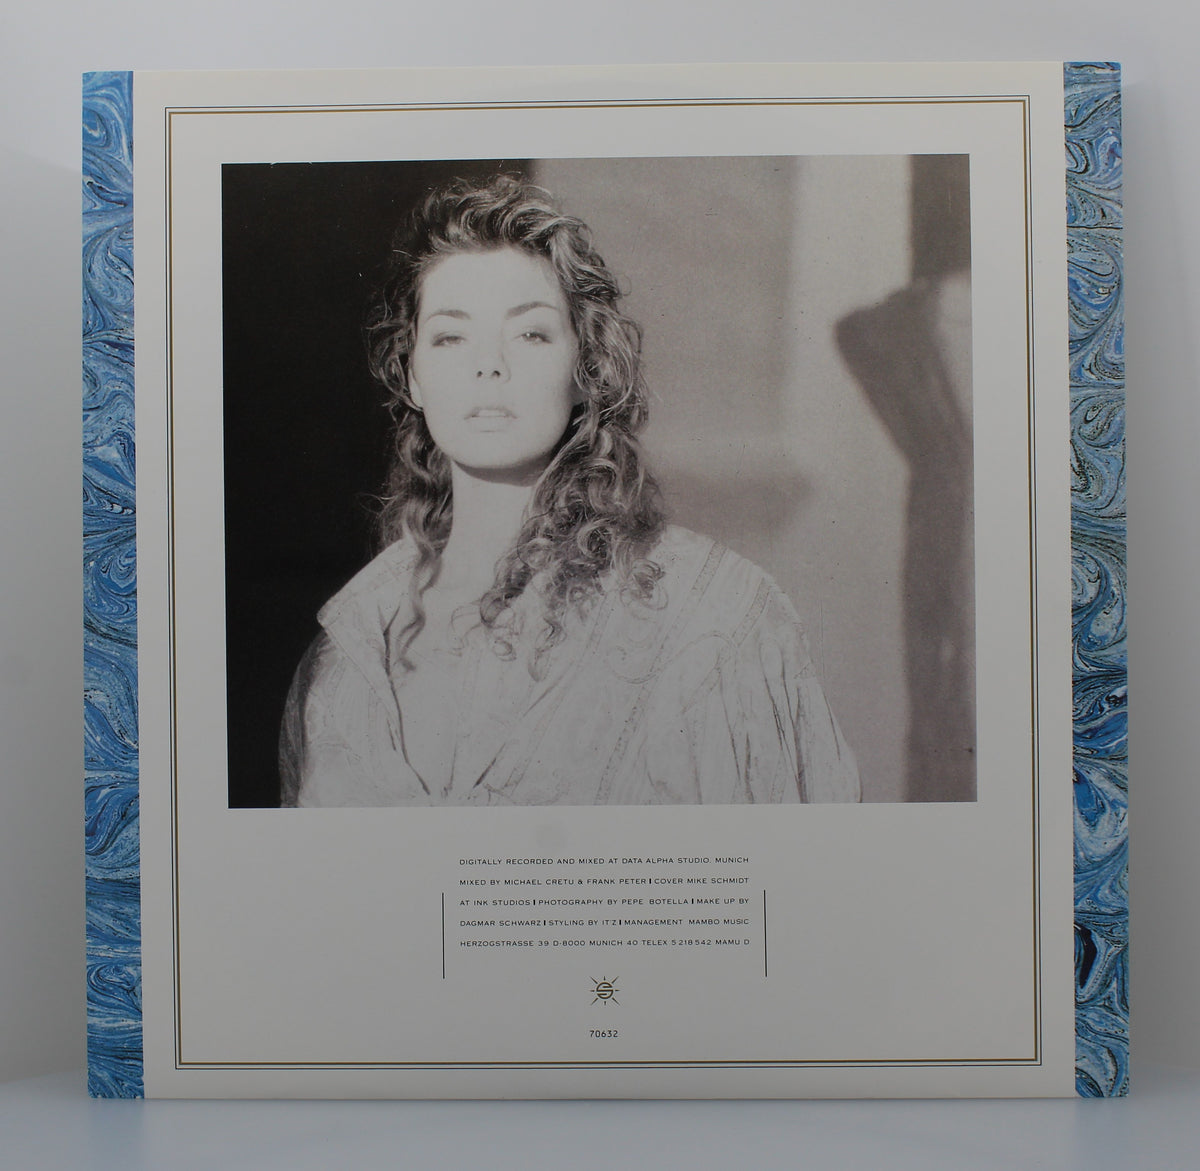 Sandra – Into A Secret Land, Vinyl, LP, Album 33⅓rpm, France 1988